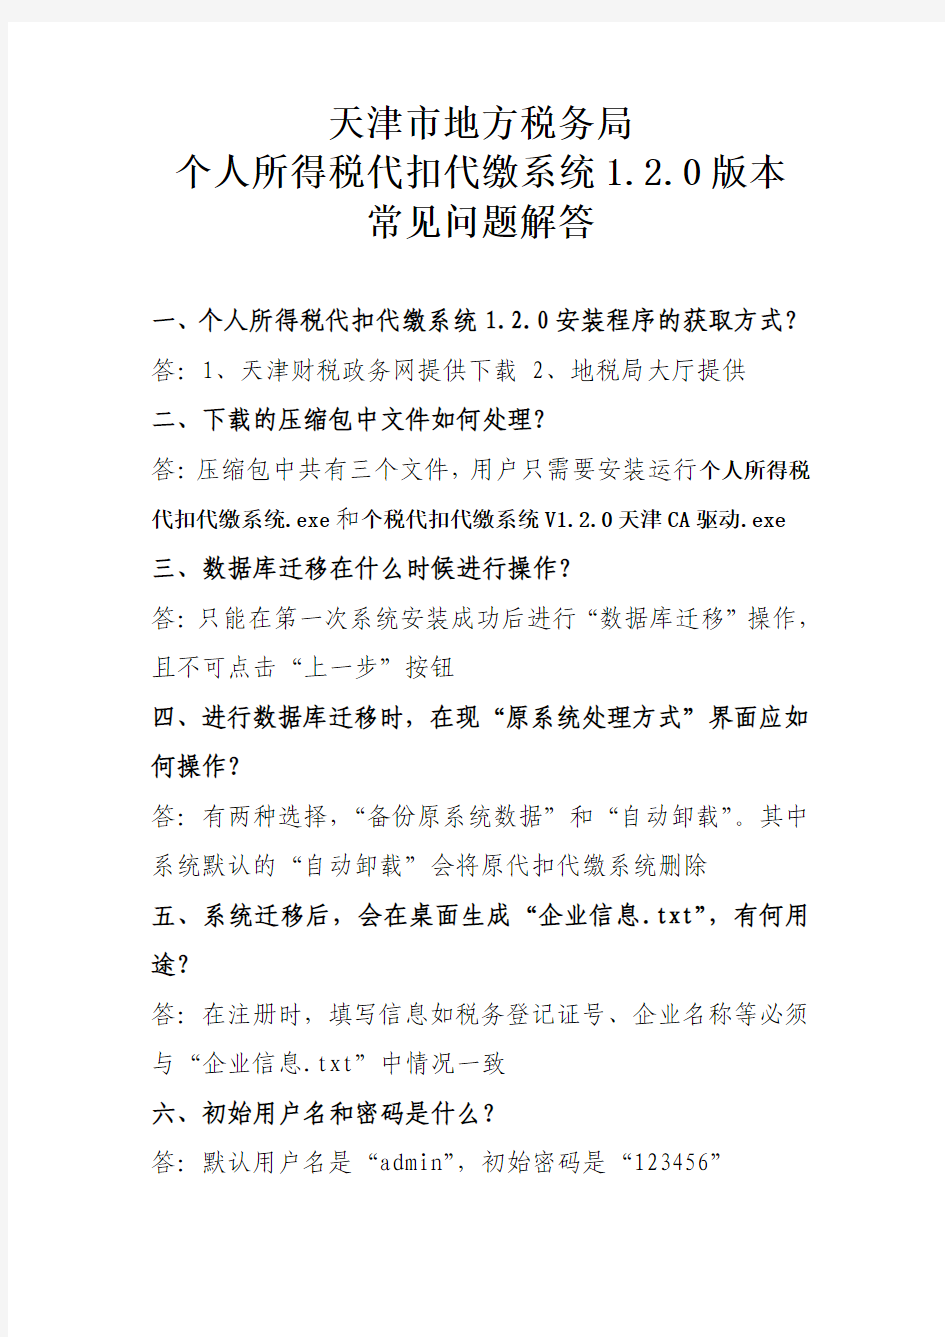 天津市地方税务局个人所得税代扣代缴系统1.2.0版本常见问题解答